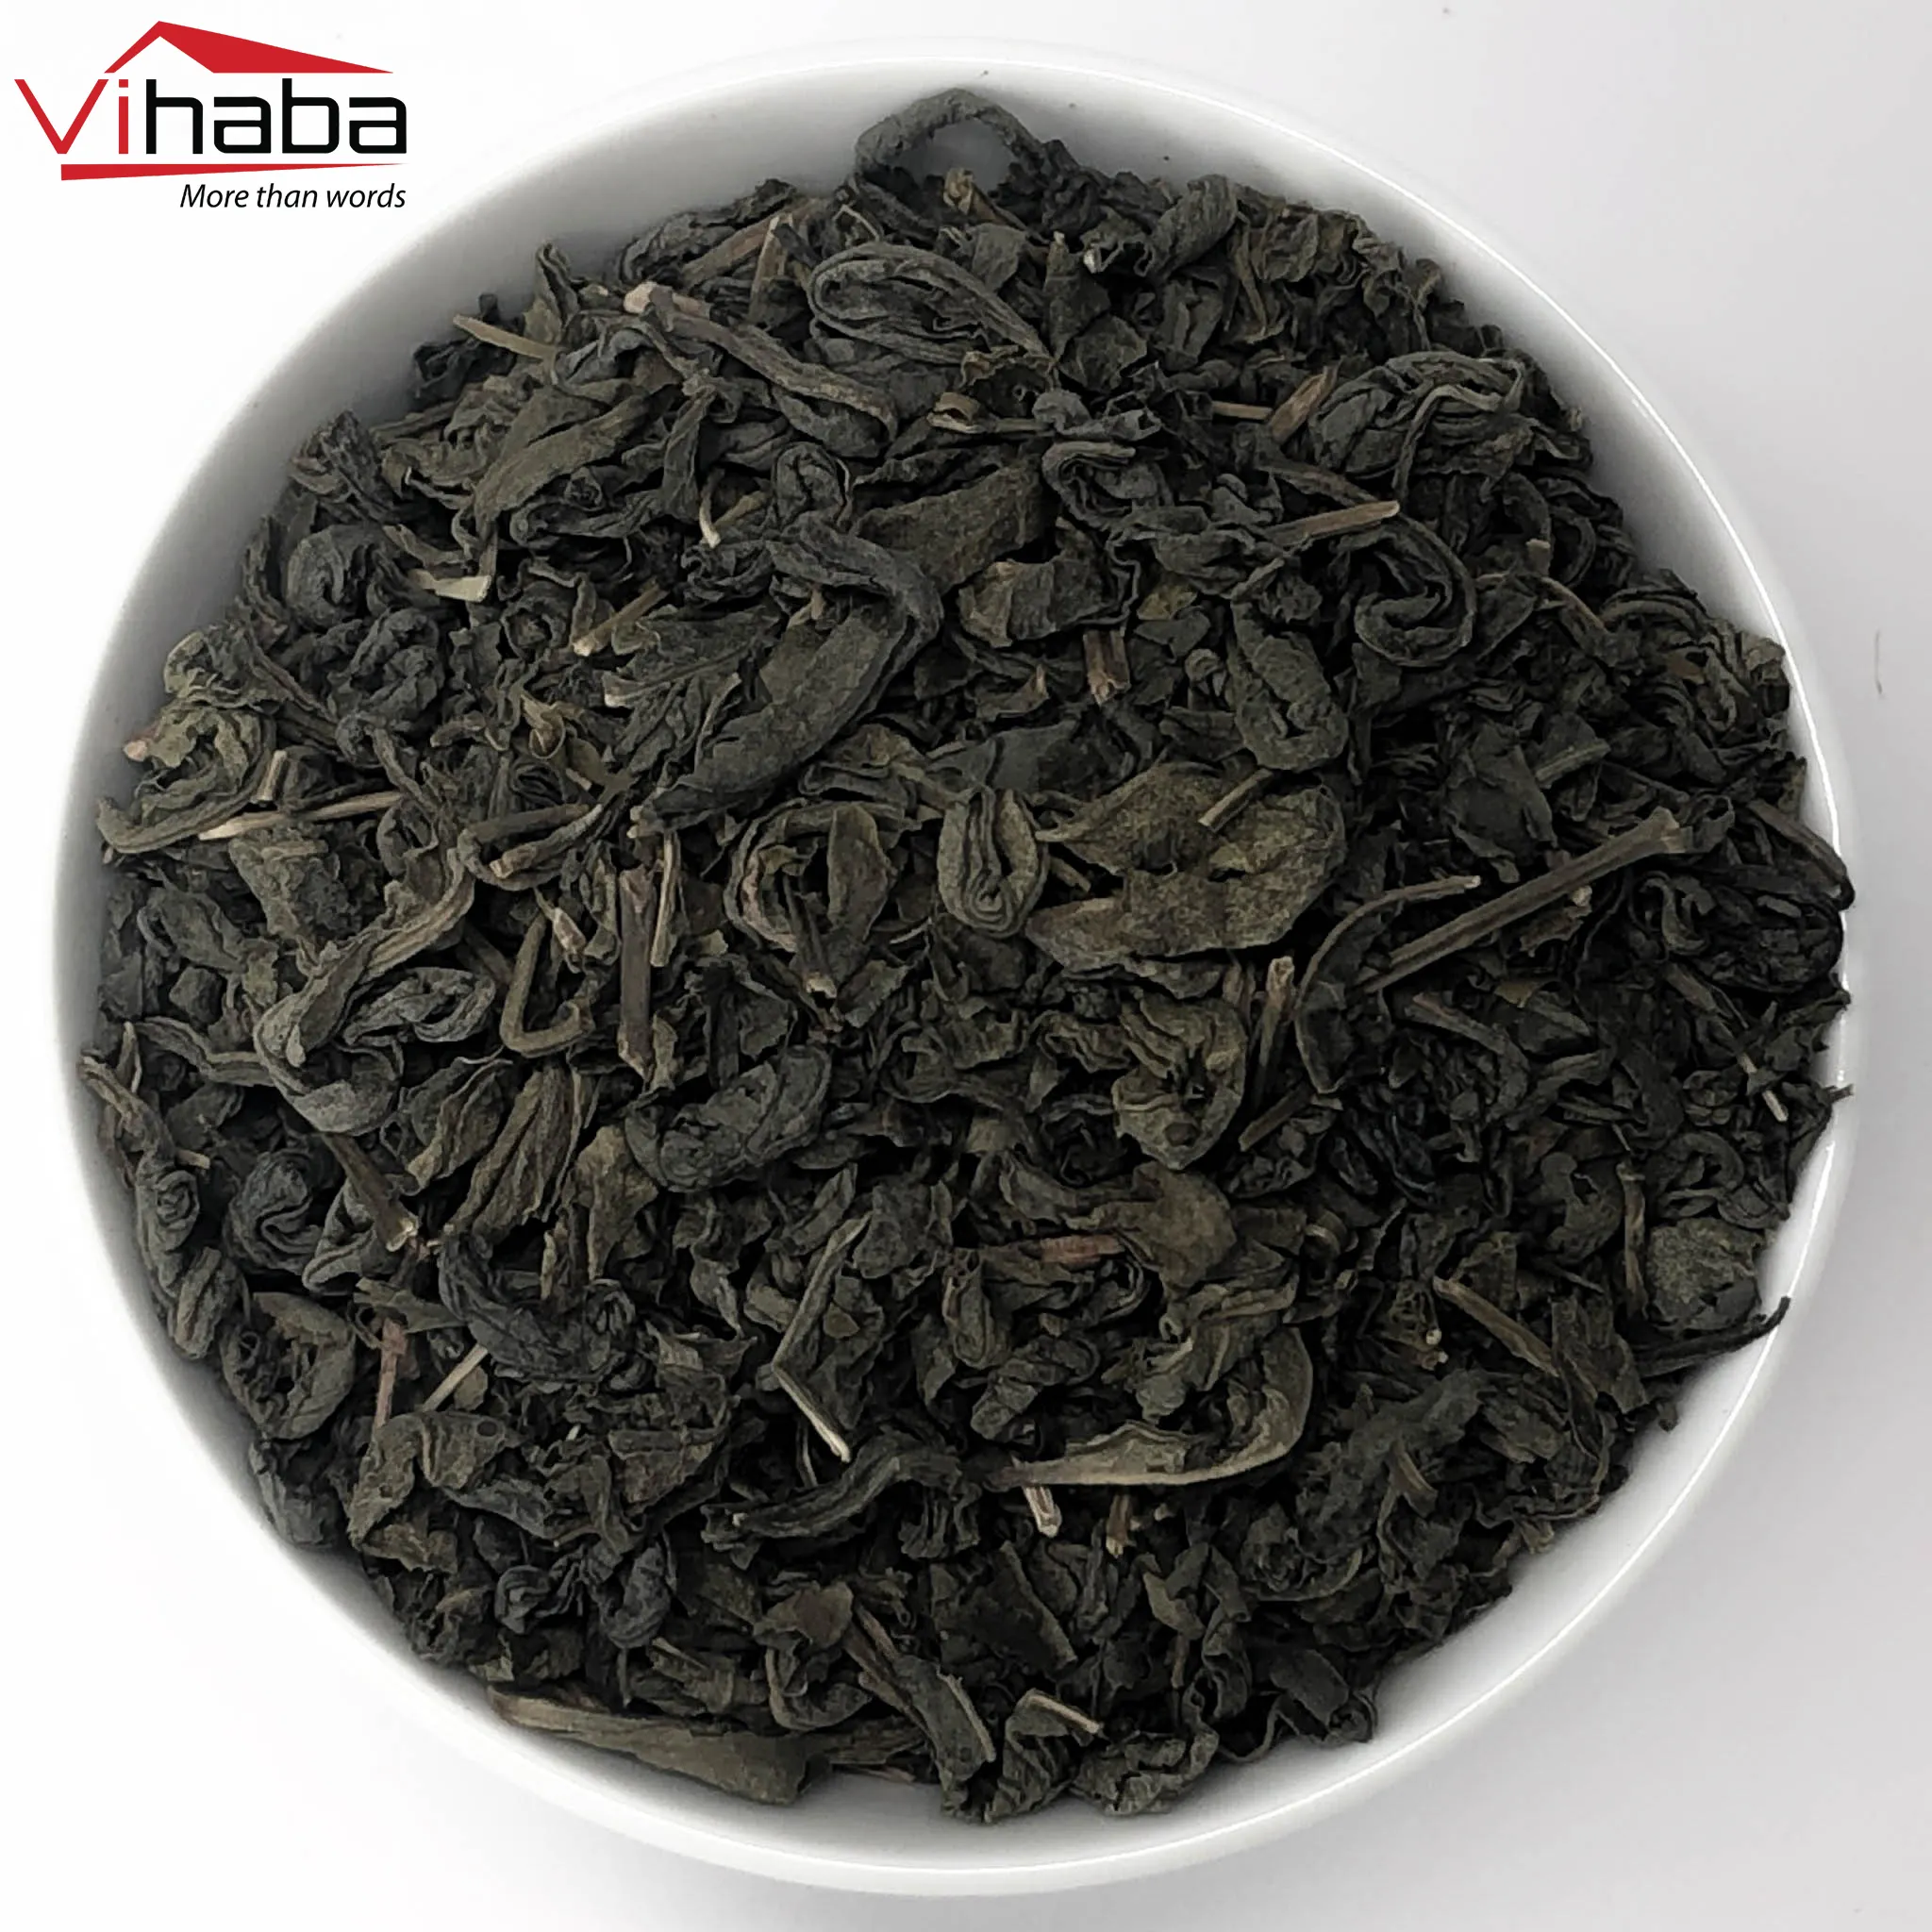 निर्यात माल boba चाय बीपीएस पु 'एर चाय ऊर्जा पेय चाय काली